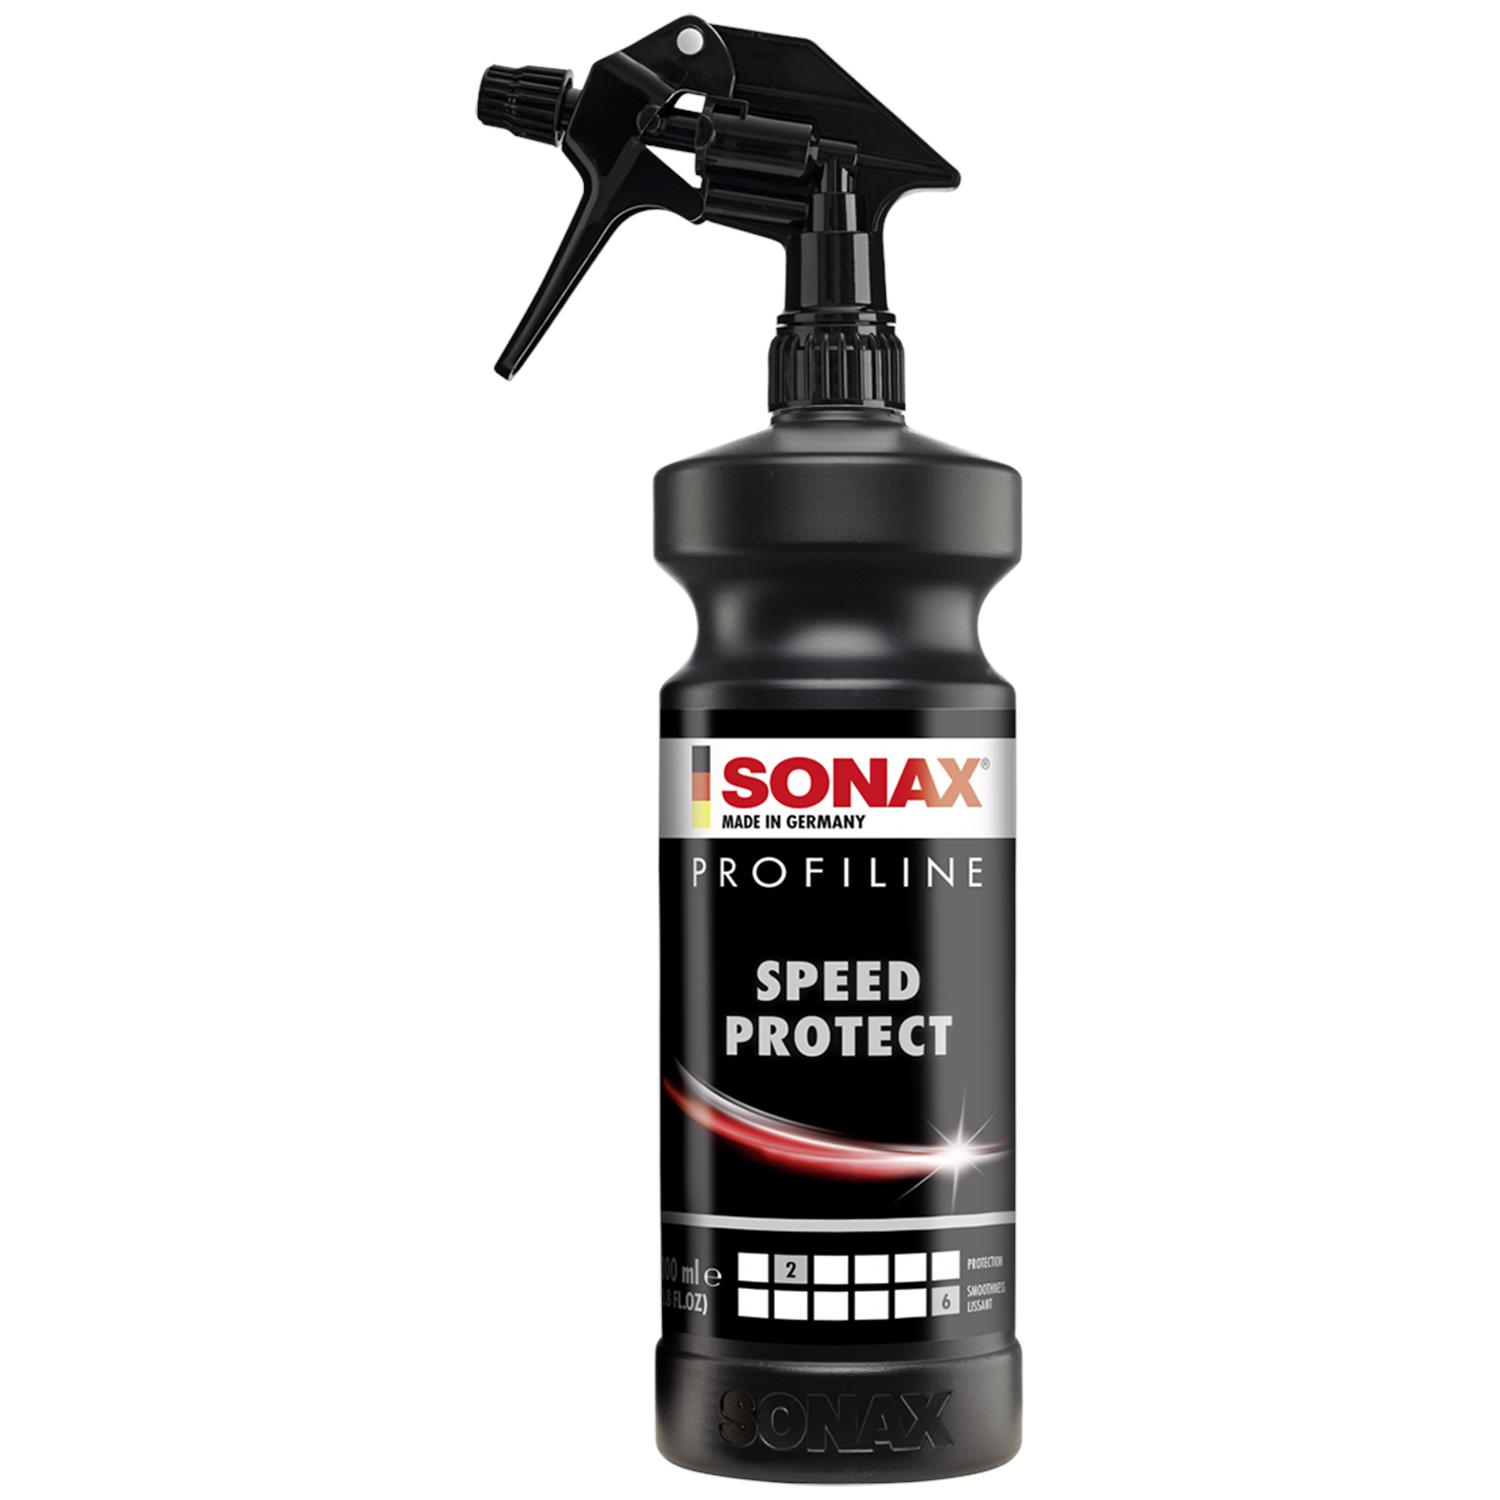 Profiline Perfect Finish - Sonax Contenance 250ml